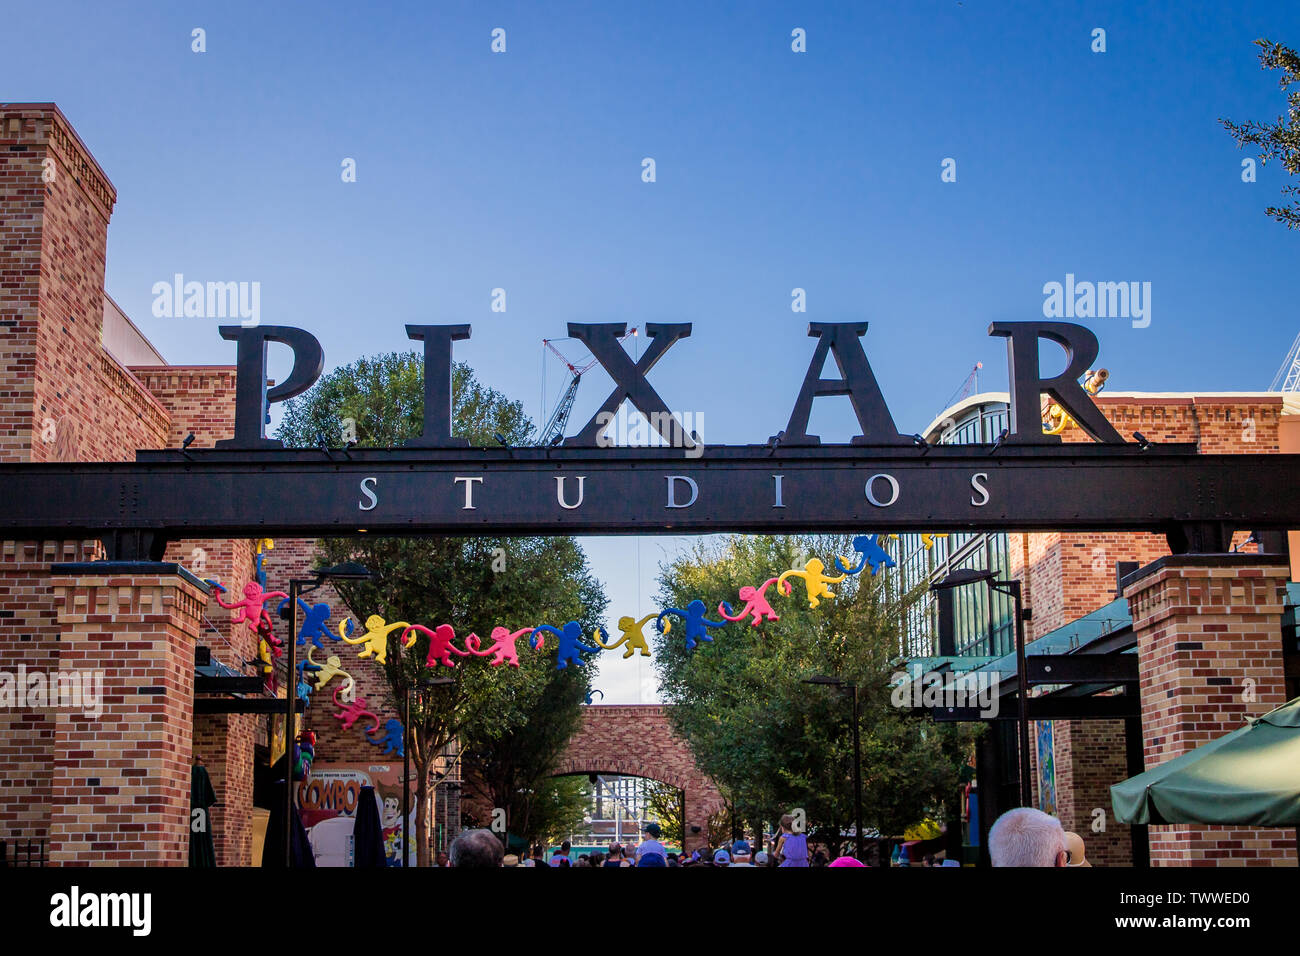 La Pixar Studios segno come gli ospiti possono passeggiare in un area con Toy Story giostre e caratteri. Foto Stock